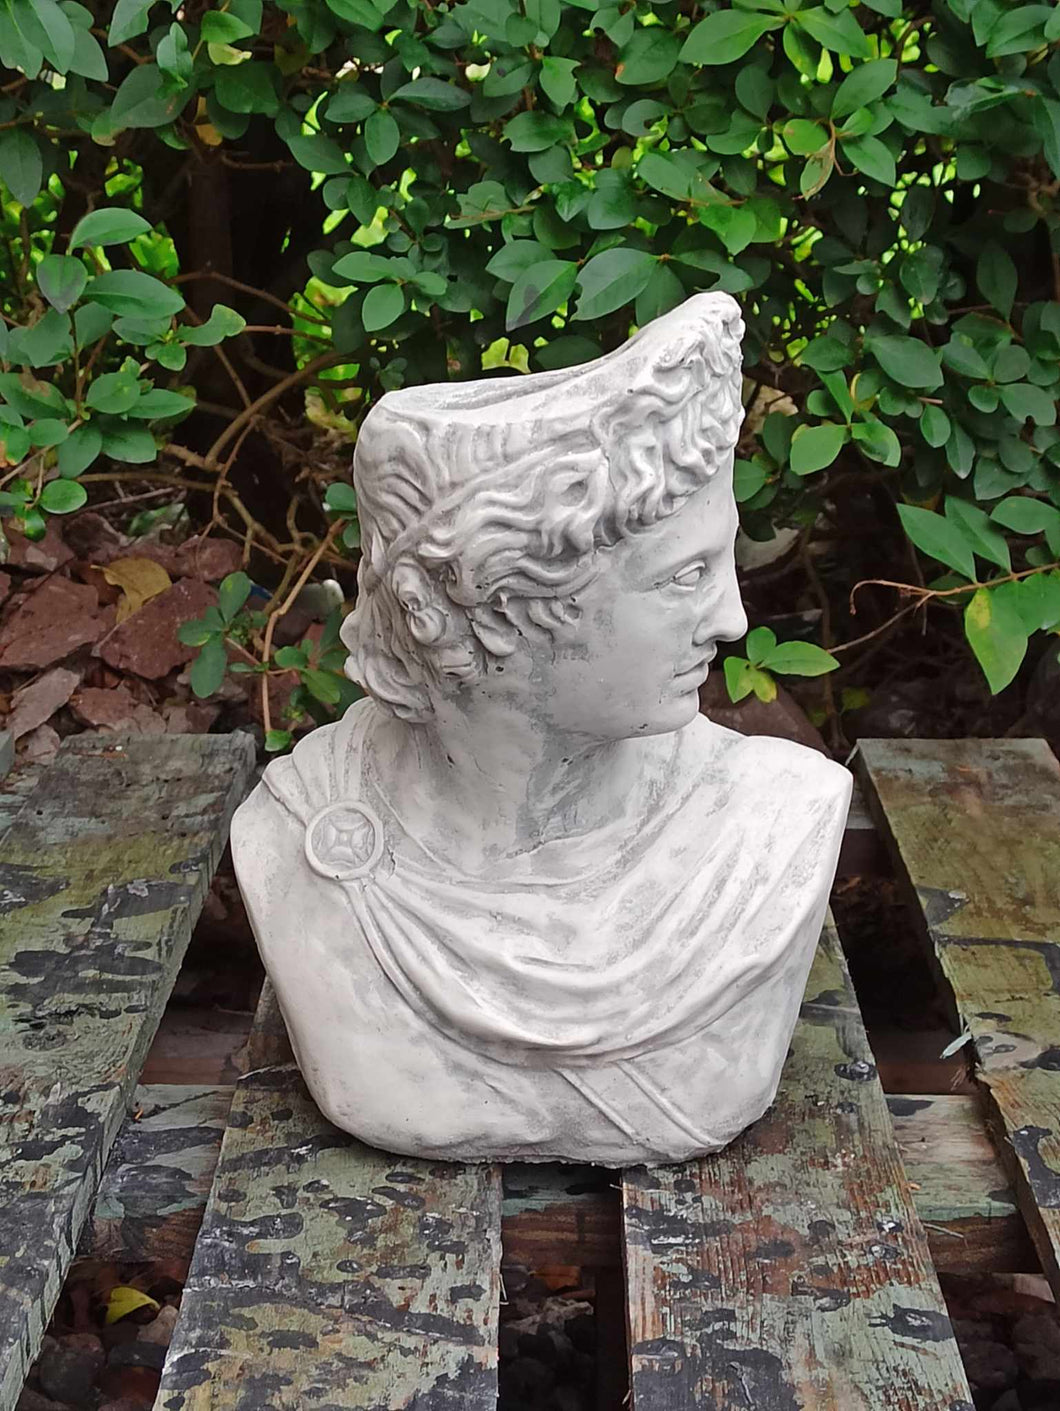 Apollo Bust Statue |Stone colour  Flower pot  Lady Greek God Sculpture Stone Garden Ornament Art